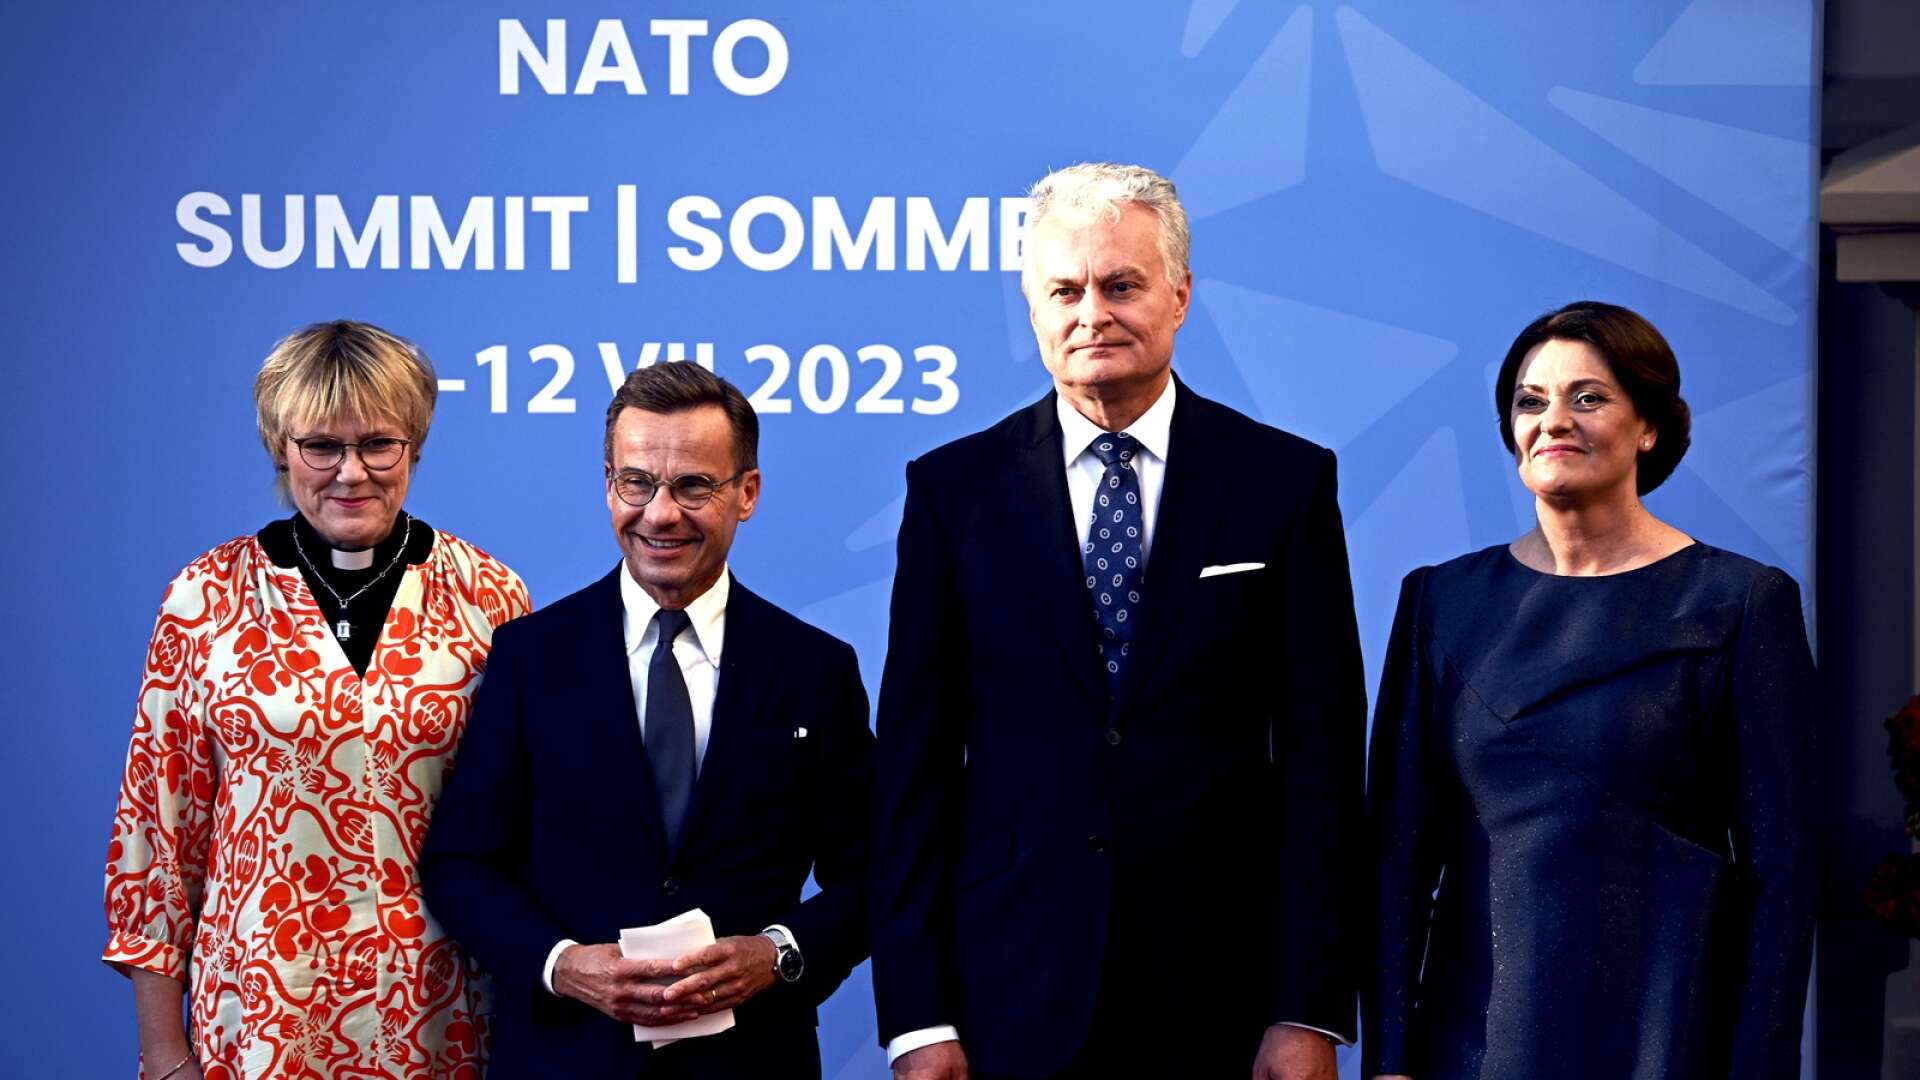 Birgitta Ed med Ulf Kristersson tillsammans med Litauens president Gitanas Nauseda med hans fru Diana Nausediene på Nato-toppmötet i Vilnius.